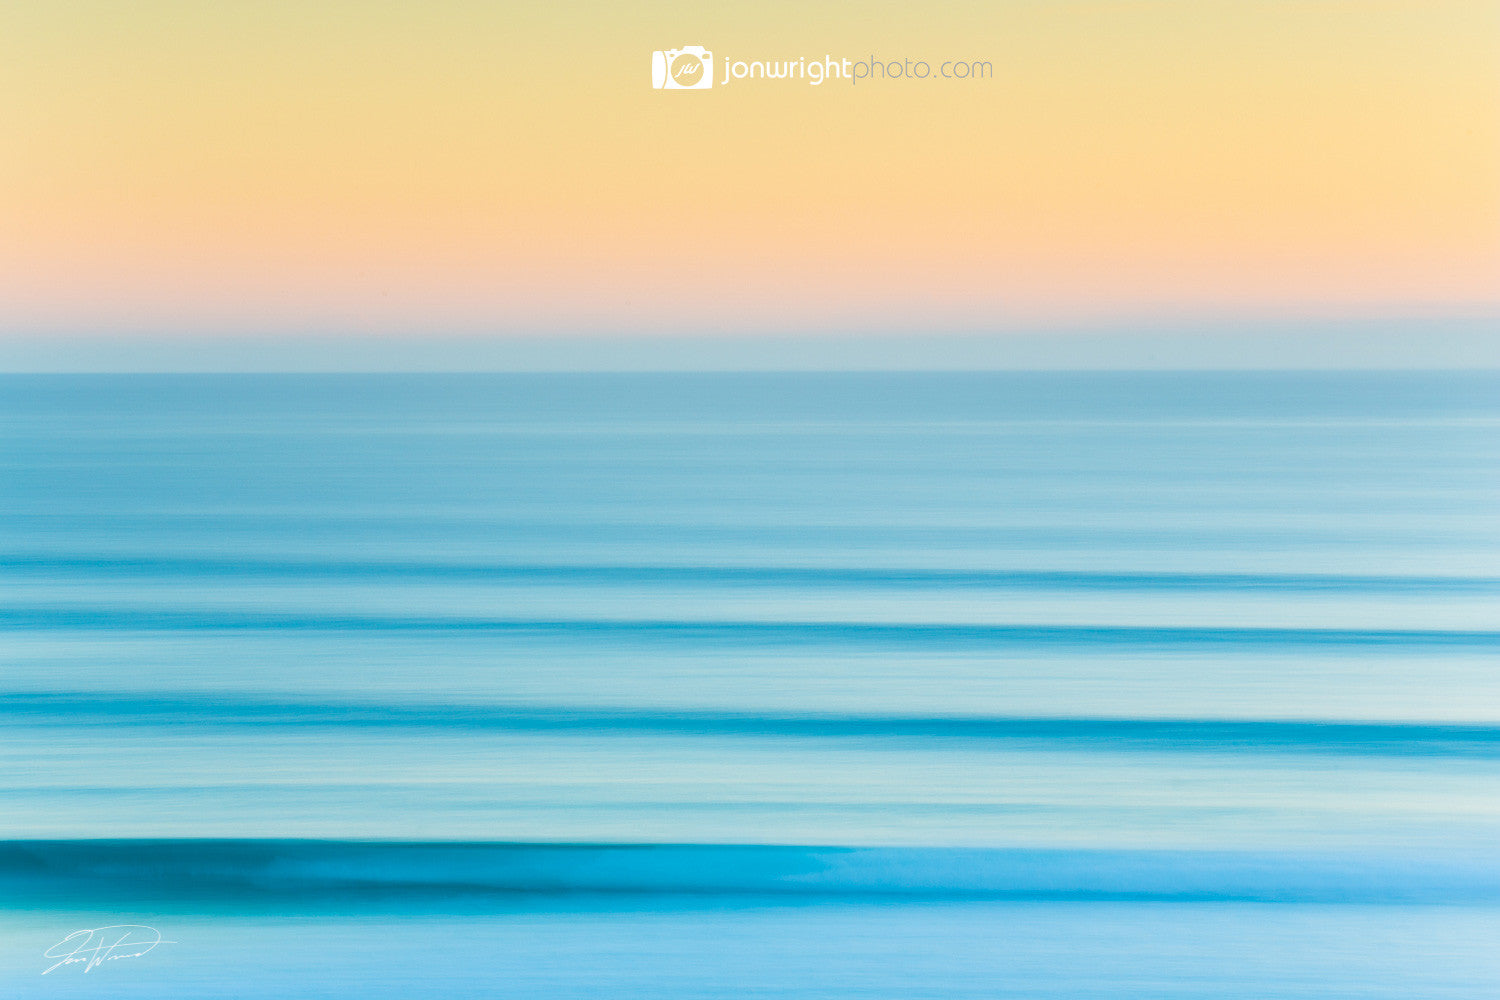 Blurred lines - Kirra beach, QLD Australia